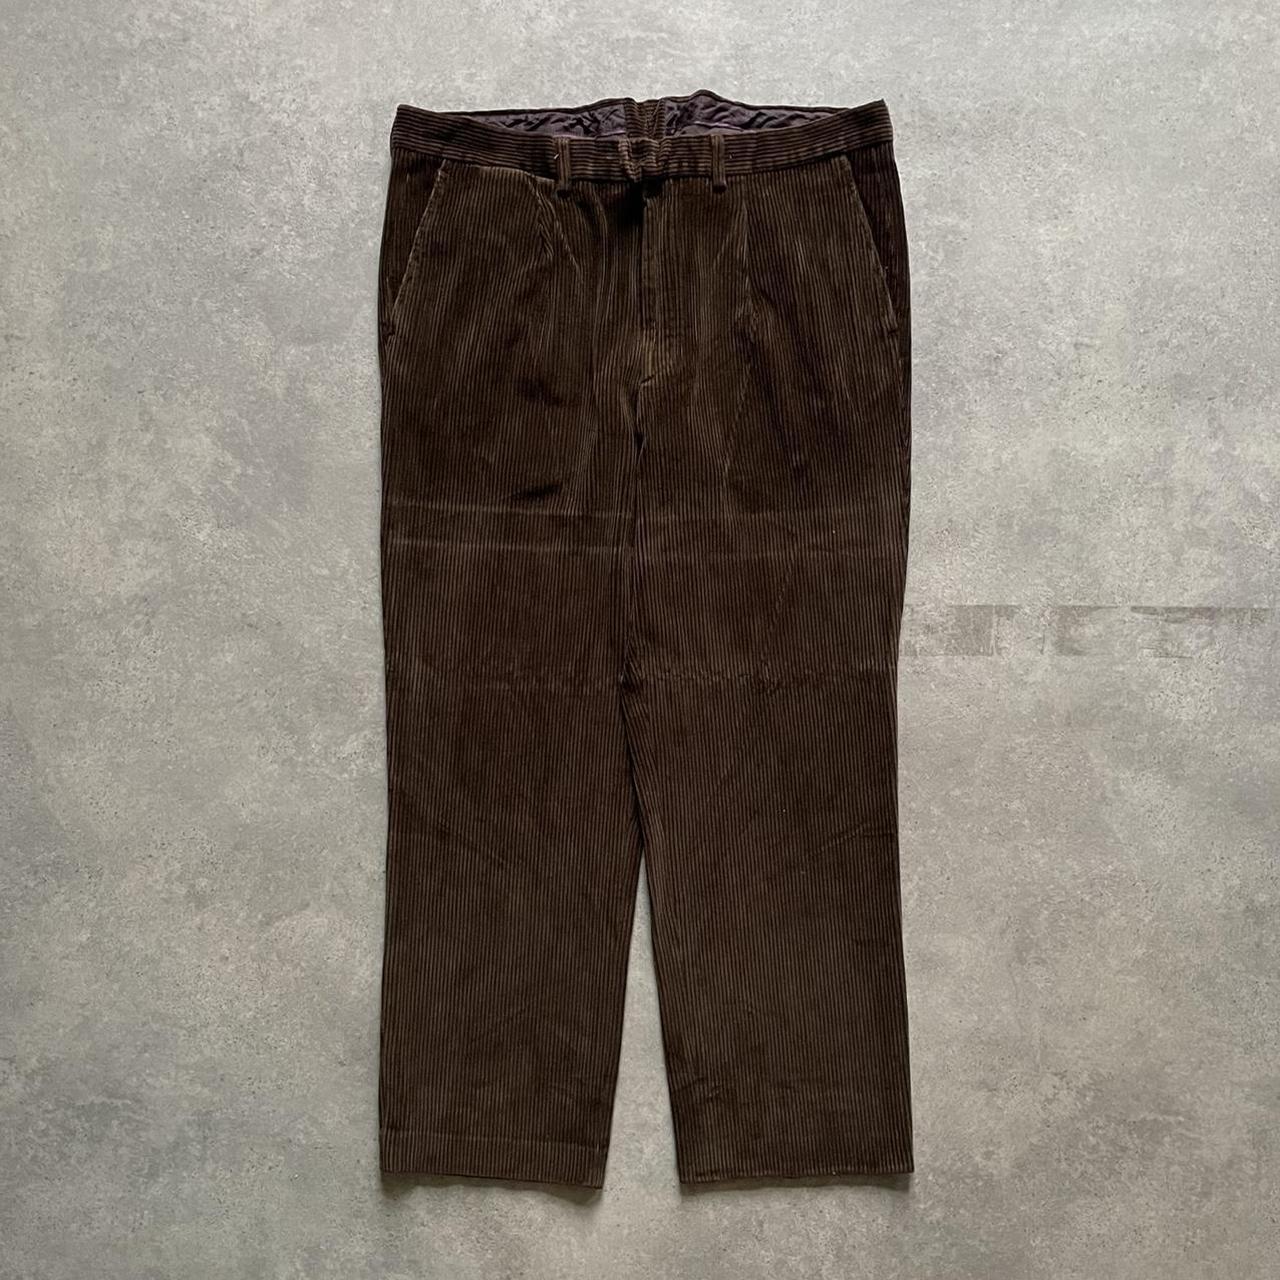 Vintage cord pants 90s jumbo corduroy trousers in... - Depop